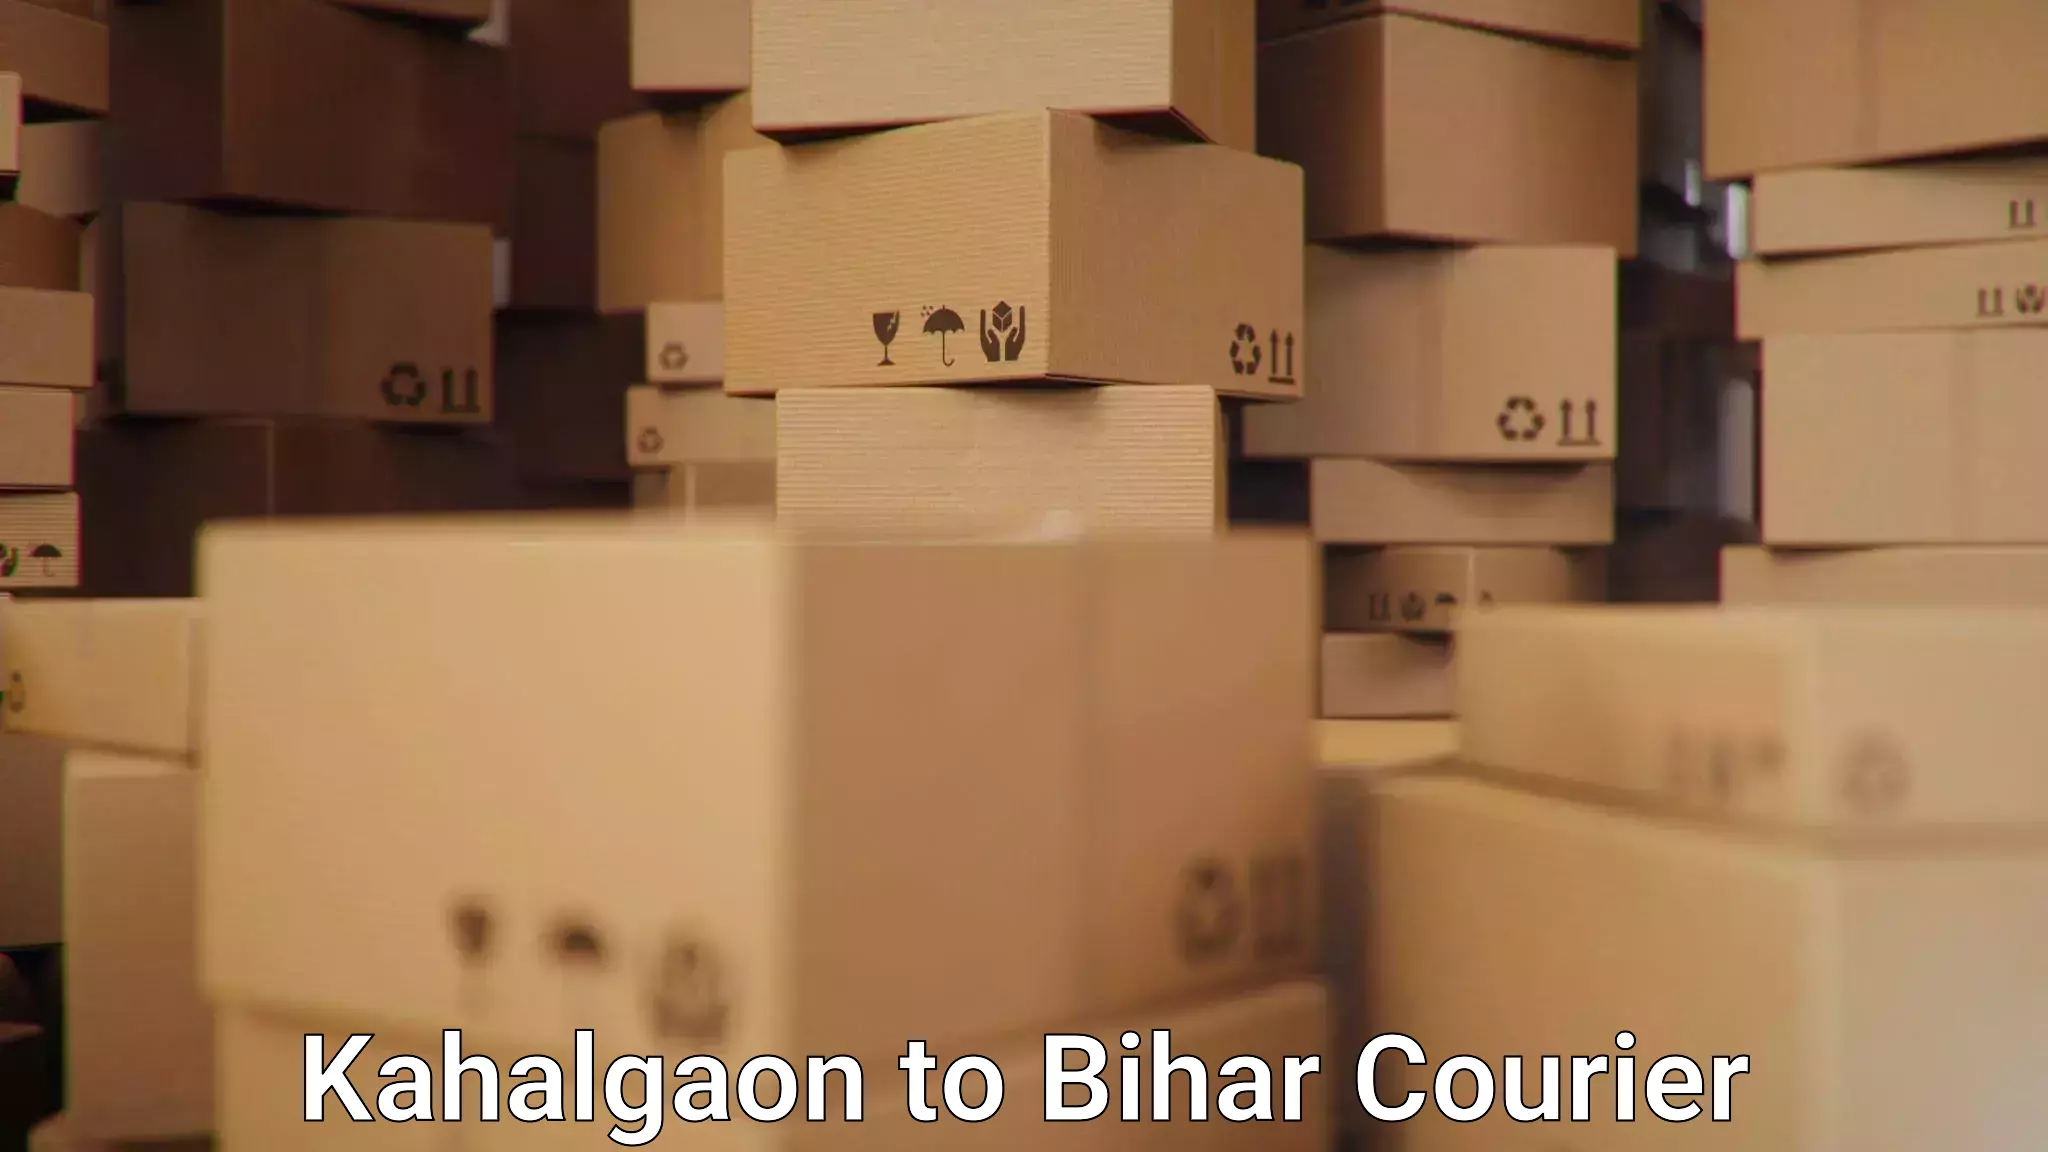 Global delivery options Kahalgaon to Mashrakh